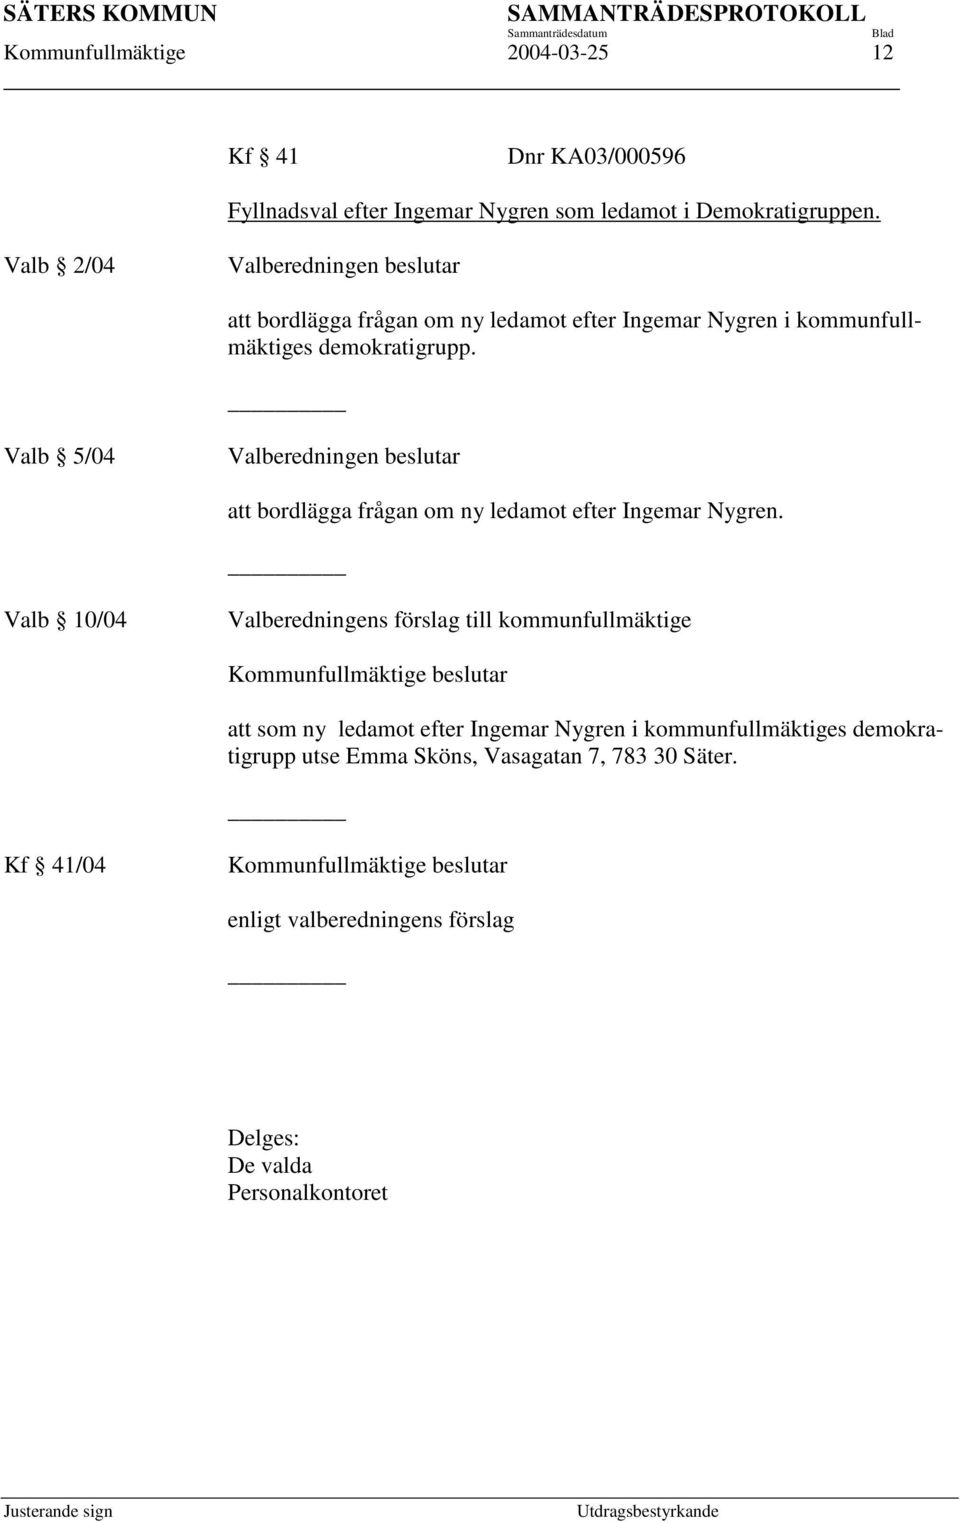 Valb 5/04 Valberedningen beslutar att bordlägga frågan om ny ledamot efter Ingemar Nygren.